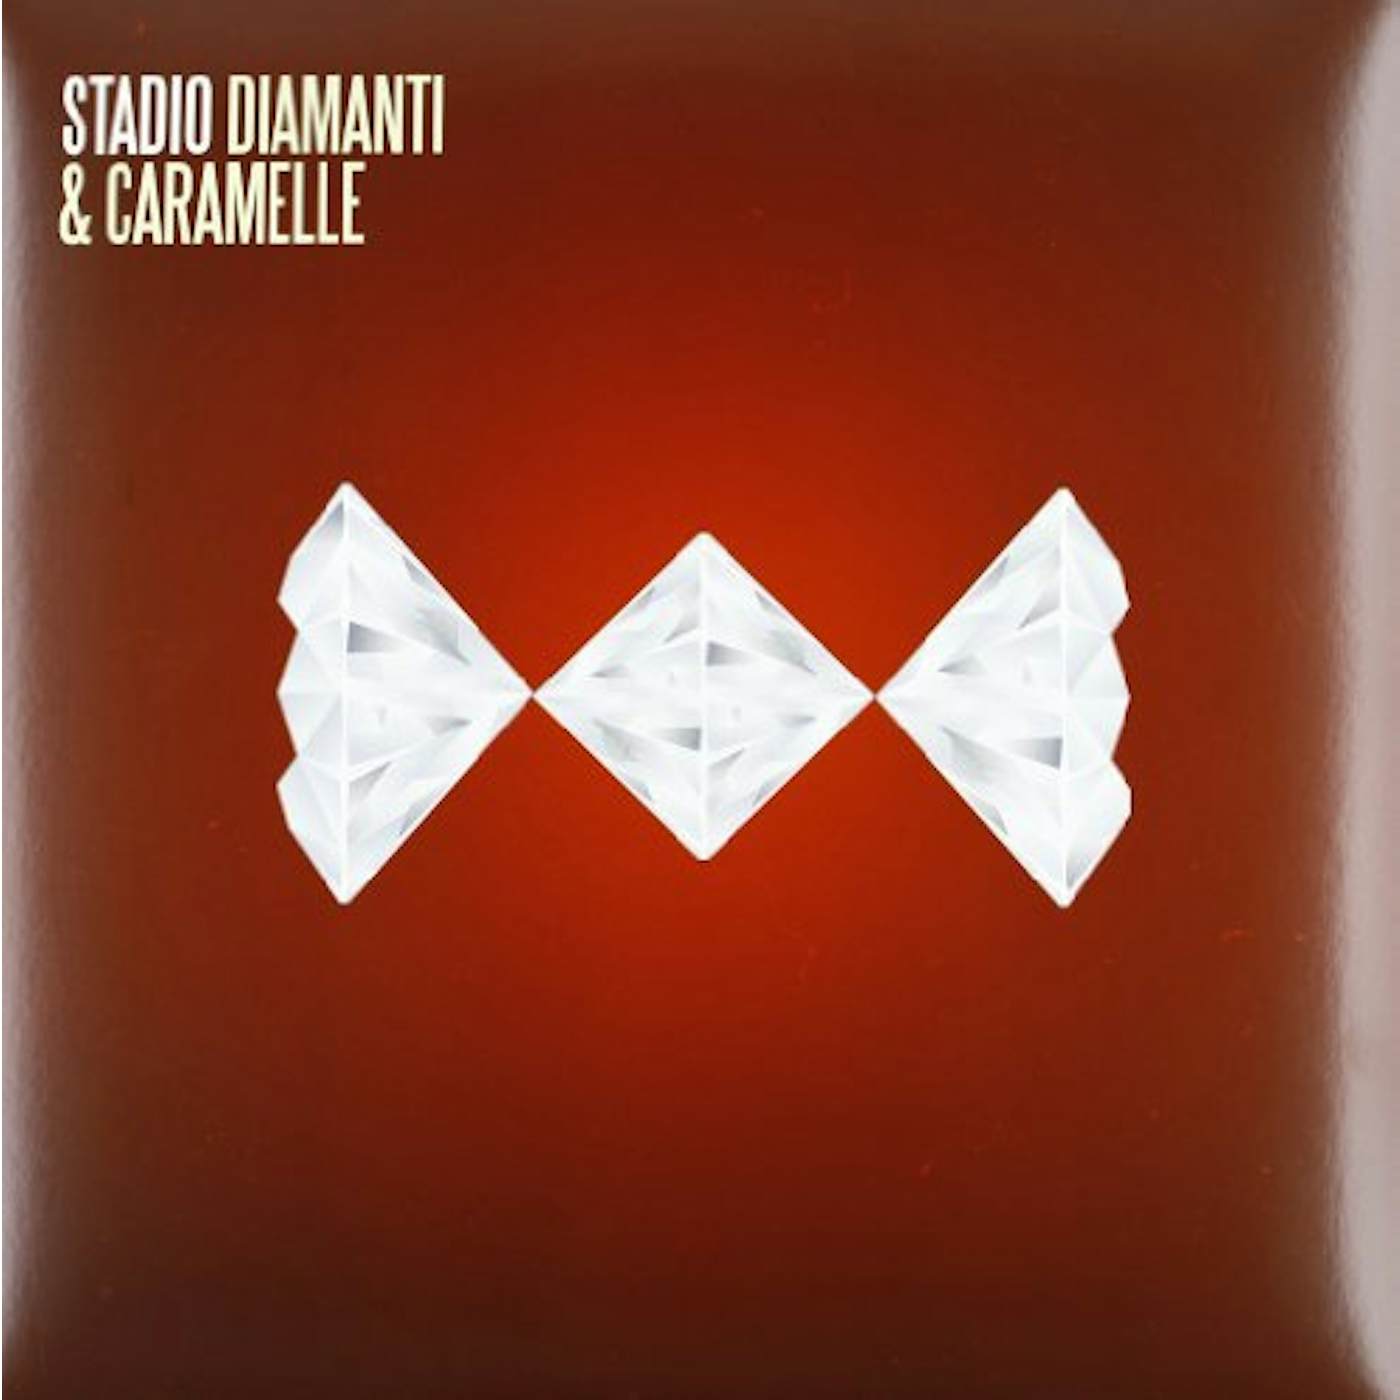 Stadio DIAMANTI & CARAMELLE Vinyl Record